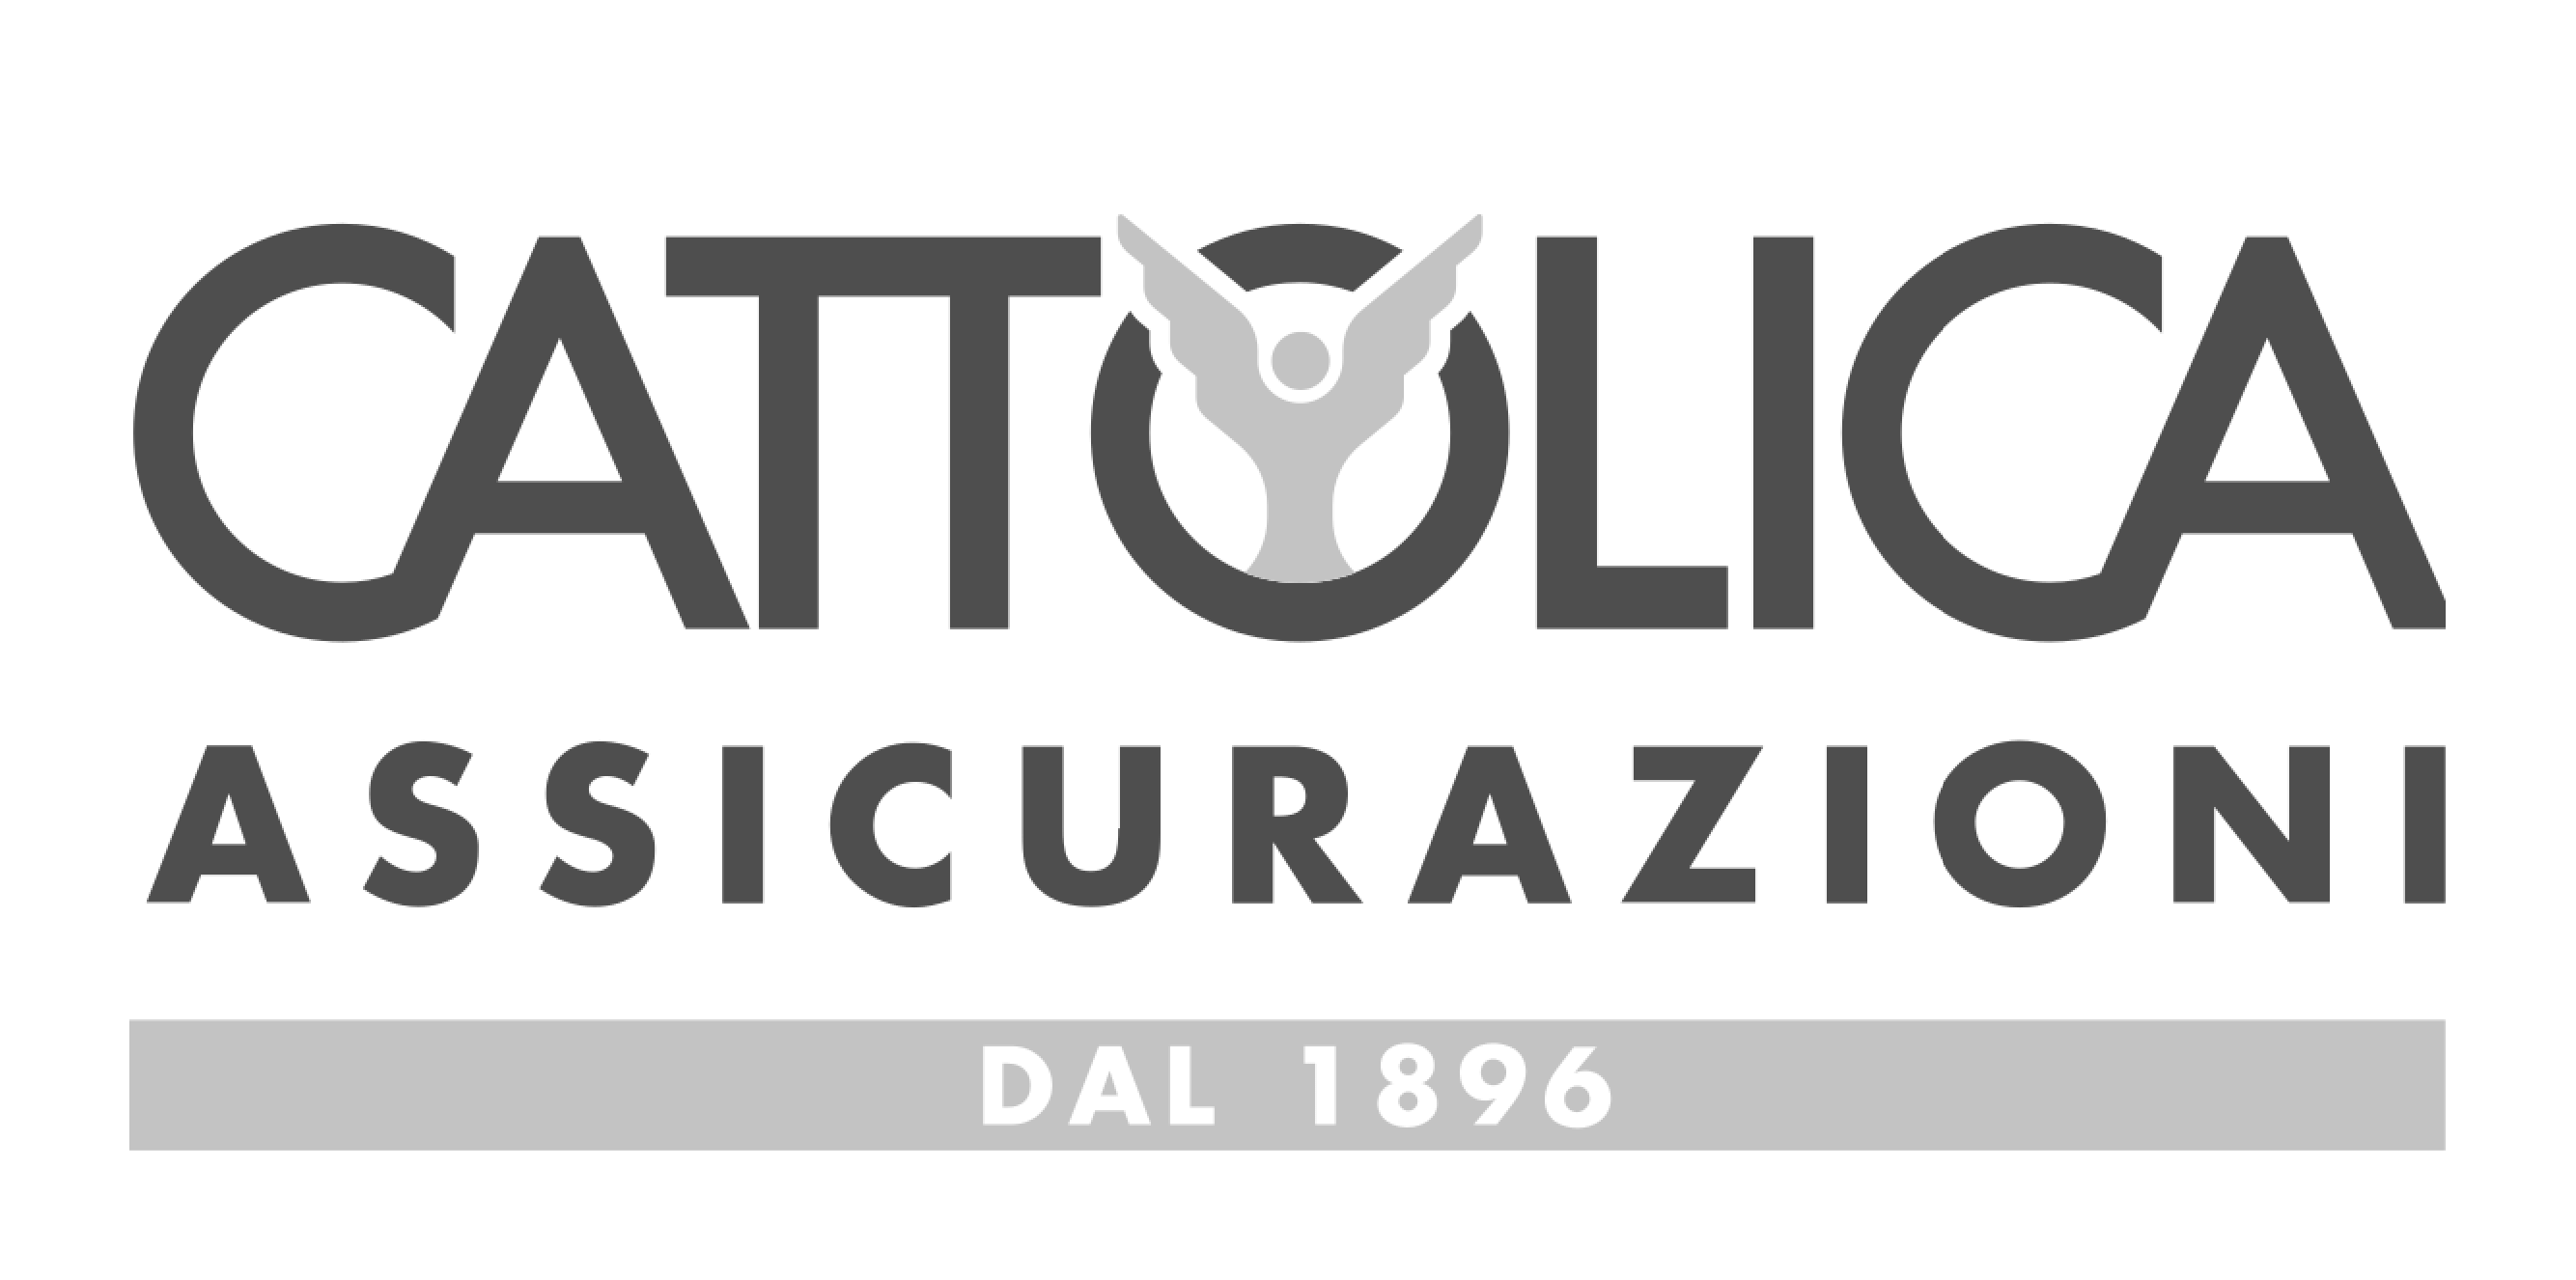 Cattolica assicurazioni_Tavola disegno 1 copia 18